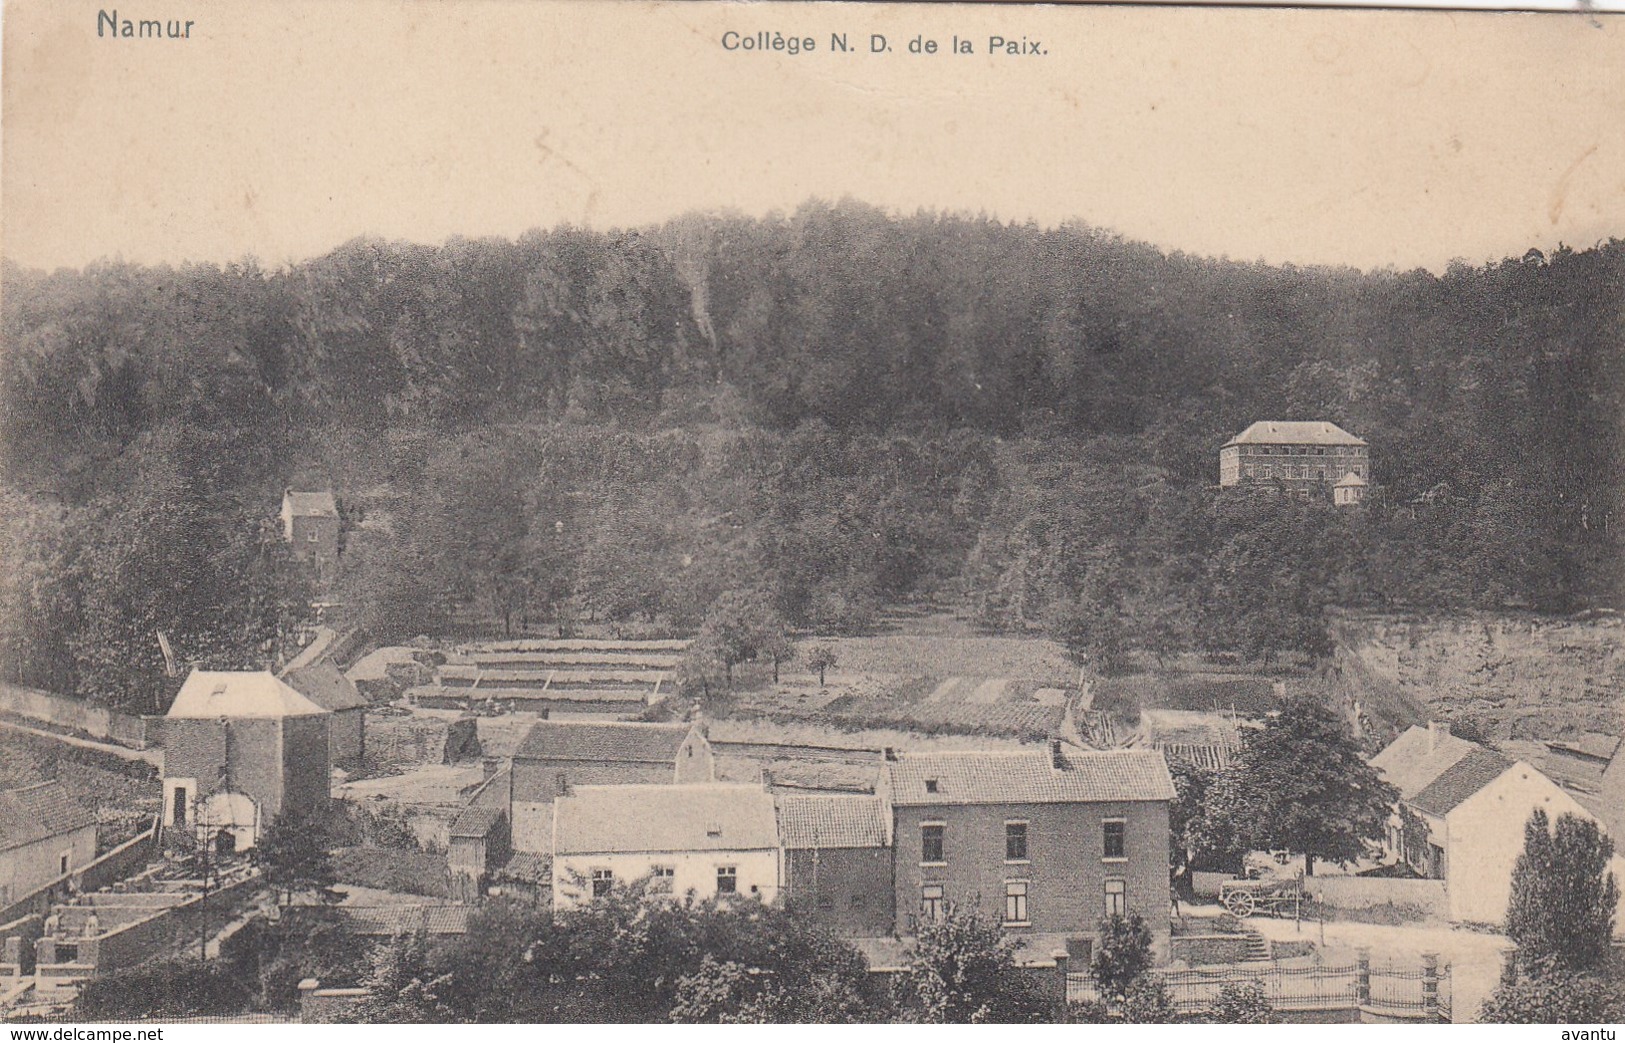 NAMUR / COLLEGE NOTRE DAME DE LA PAIX  1911 - Namur